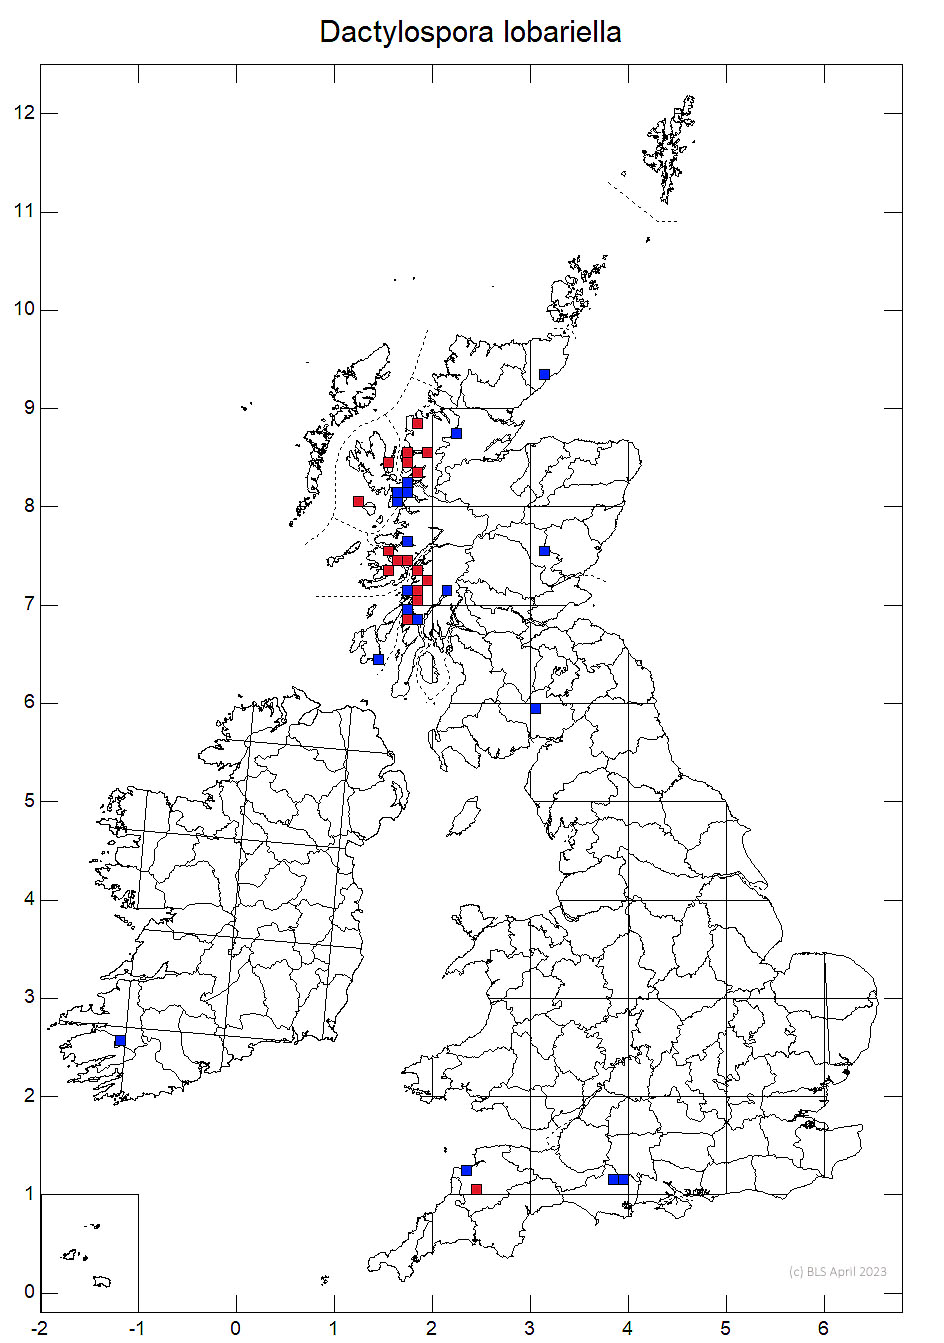 Dactylospora lobariella 10km sq distribution map